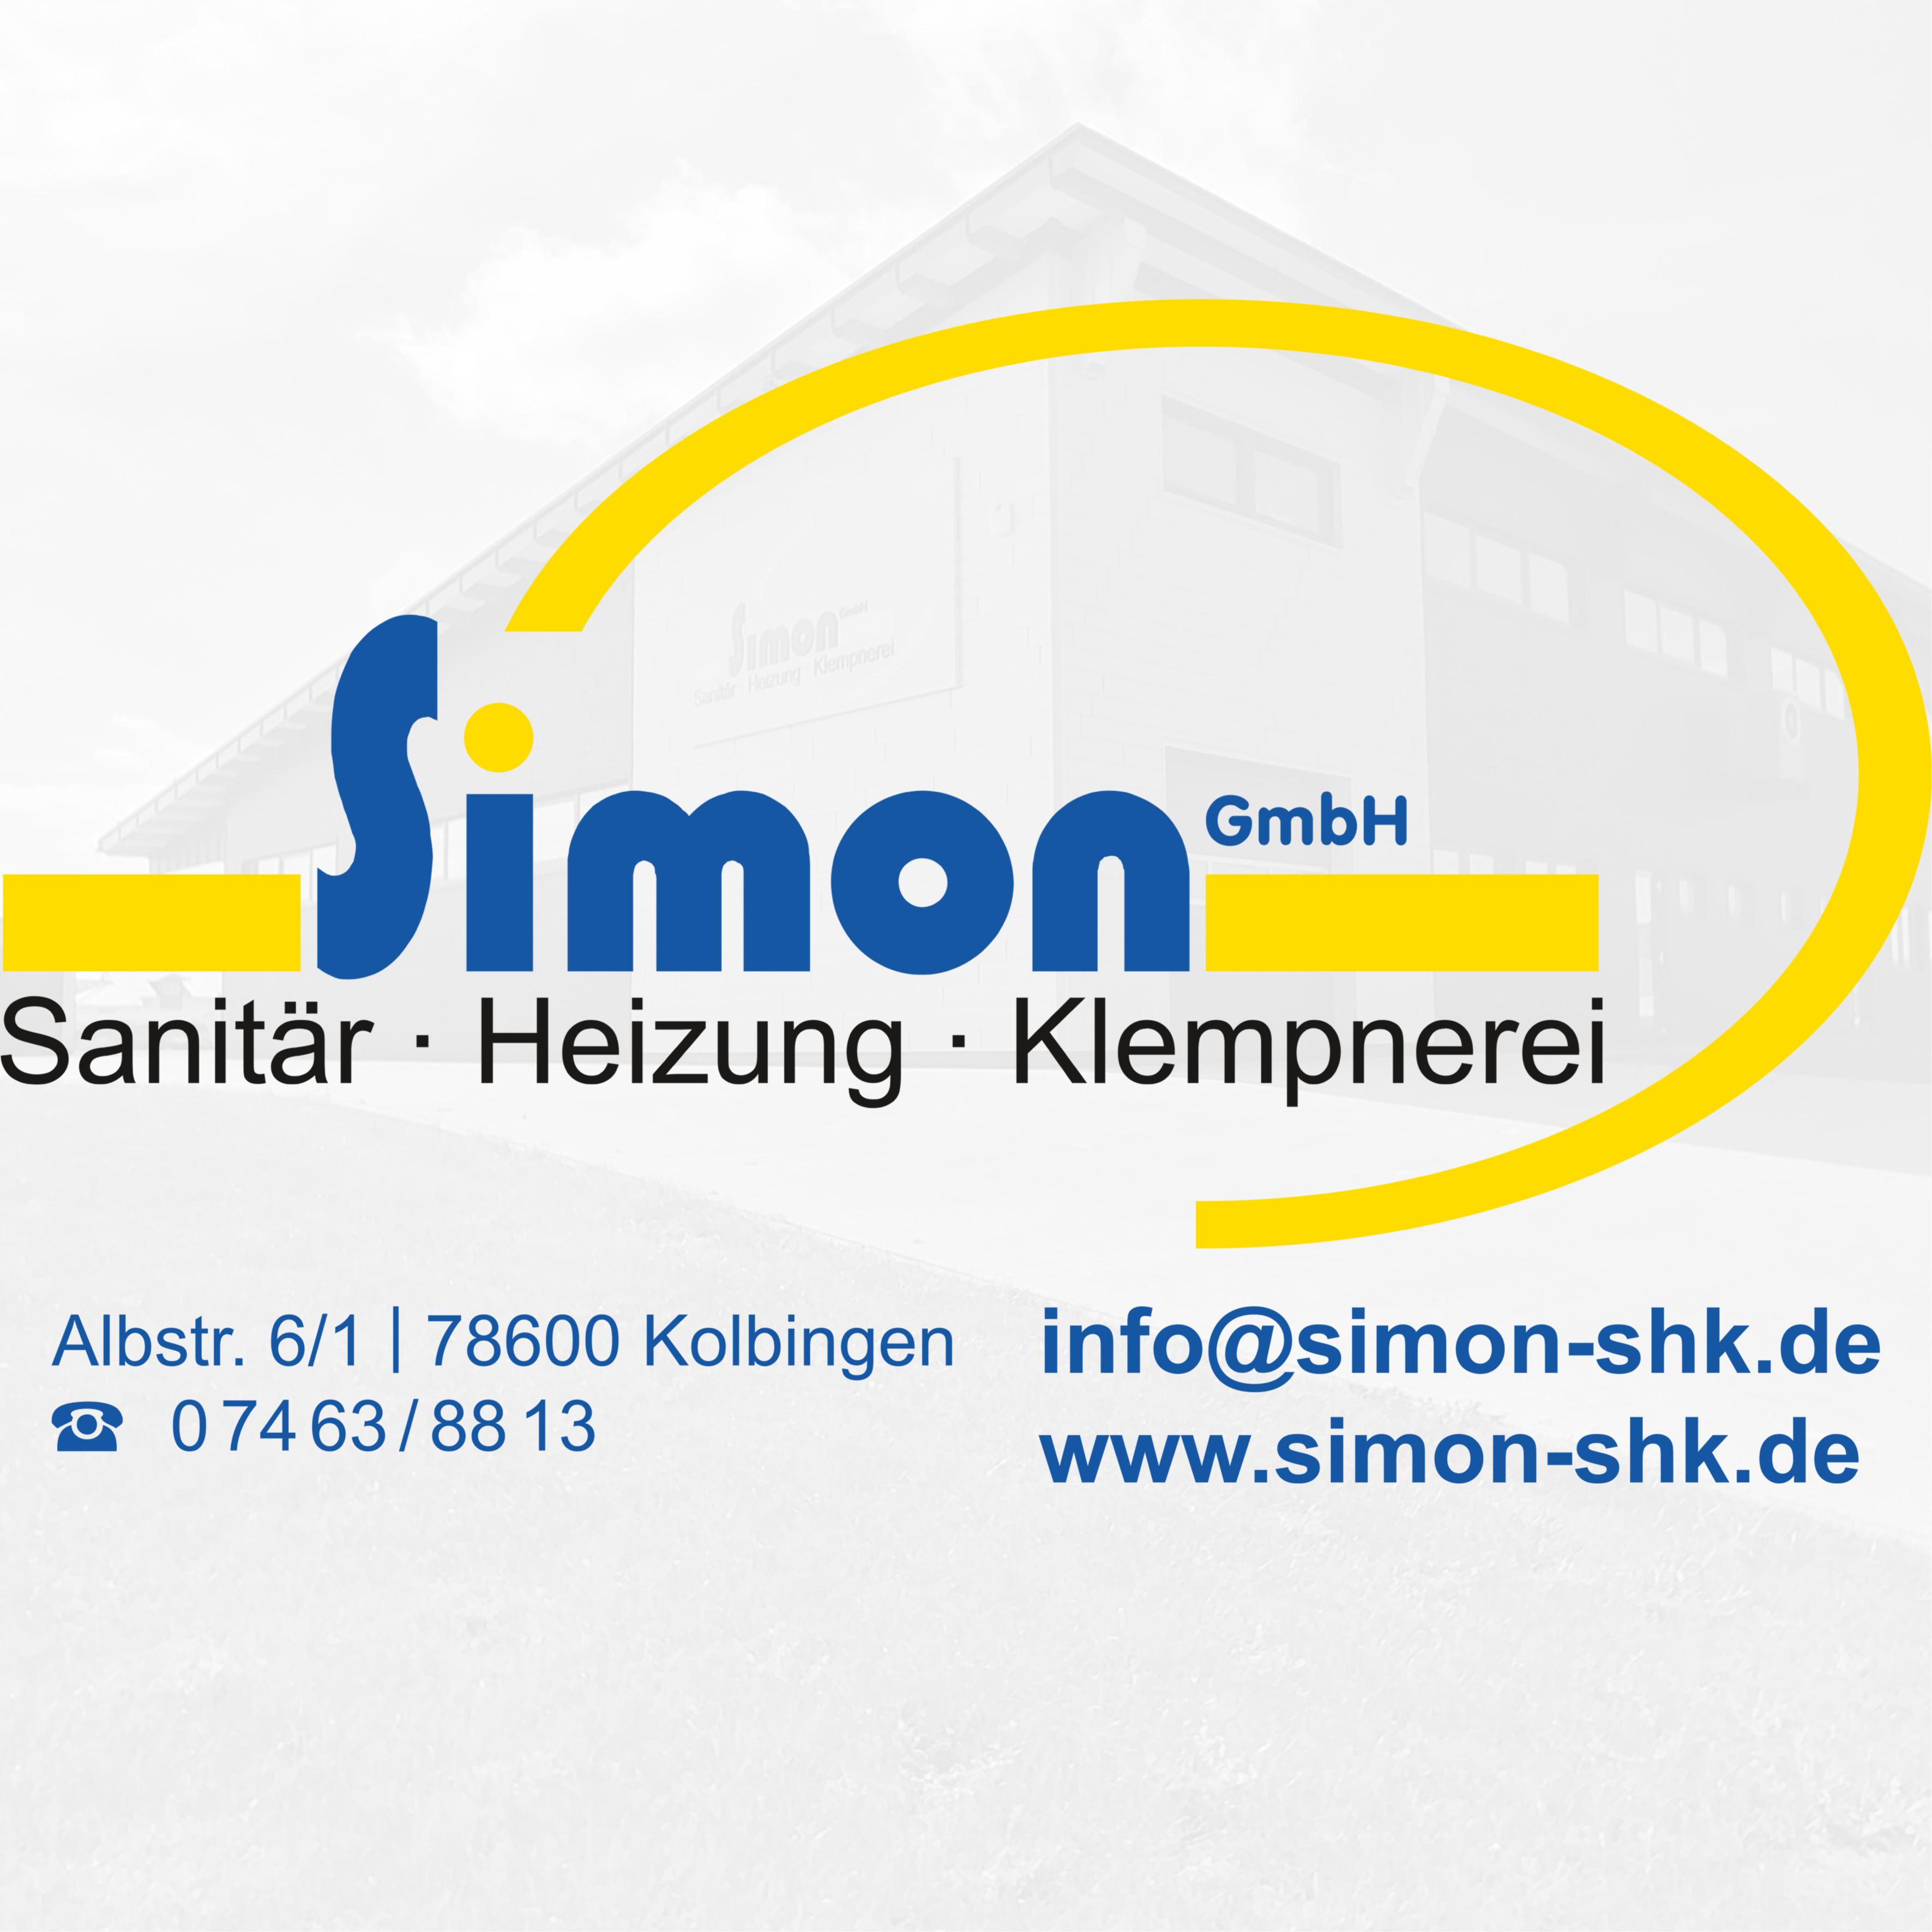 Logo Simon GmbH - Heizung, Sanitär, Klempnerei